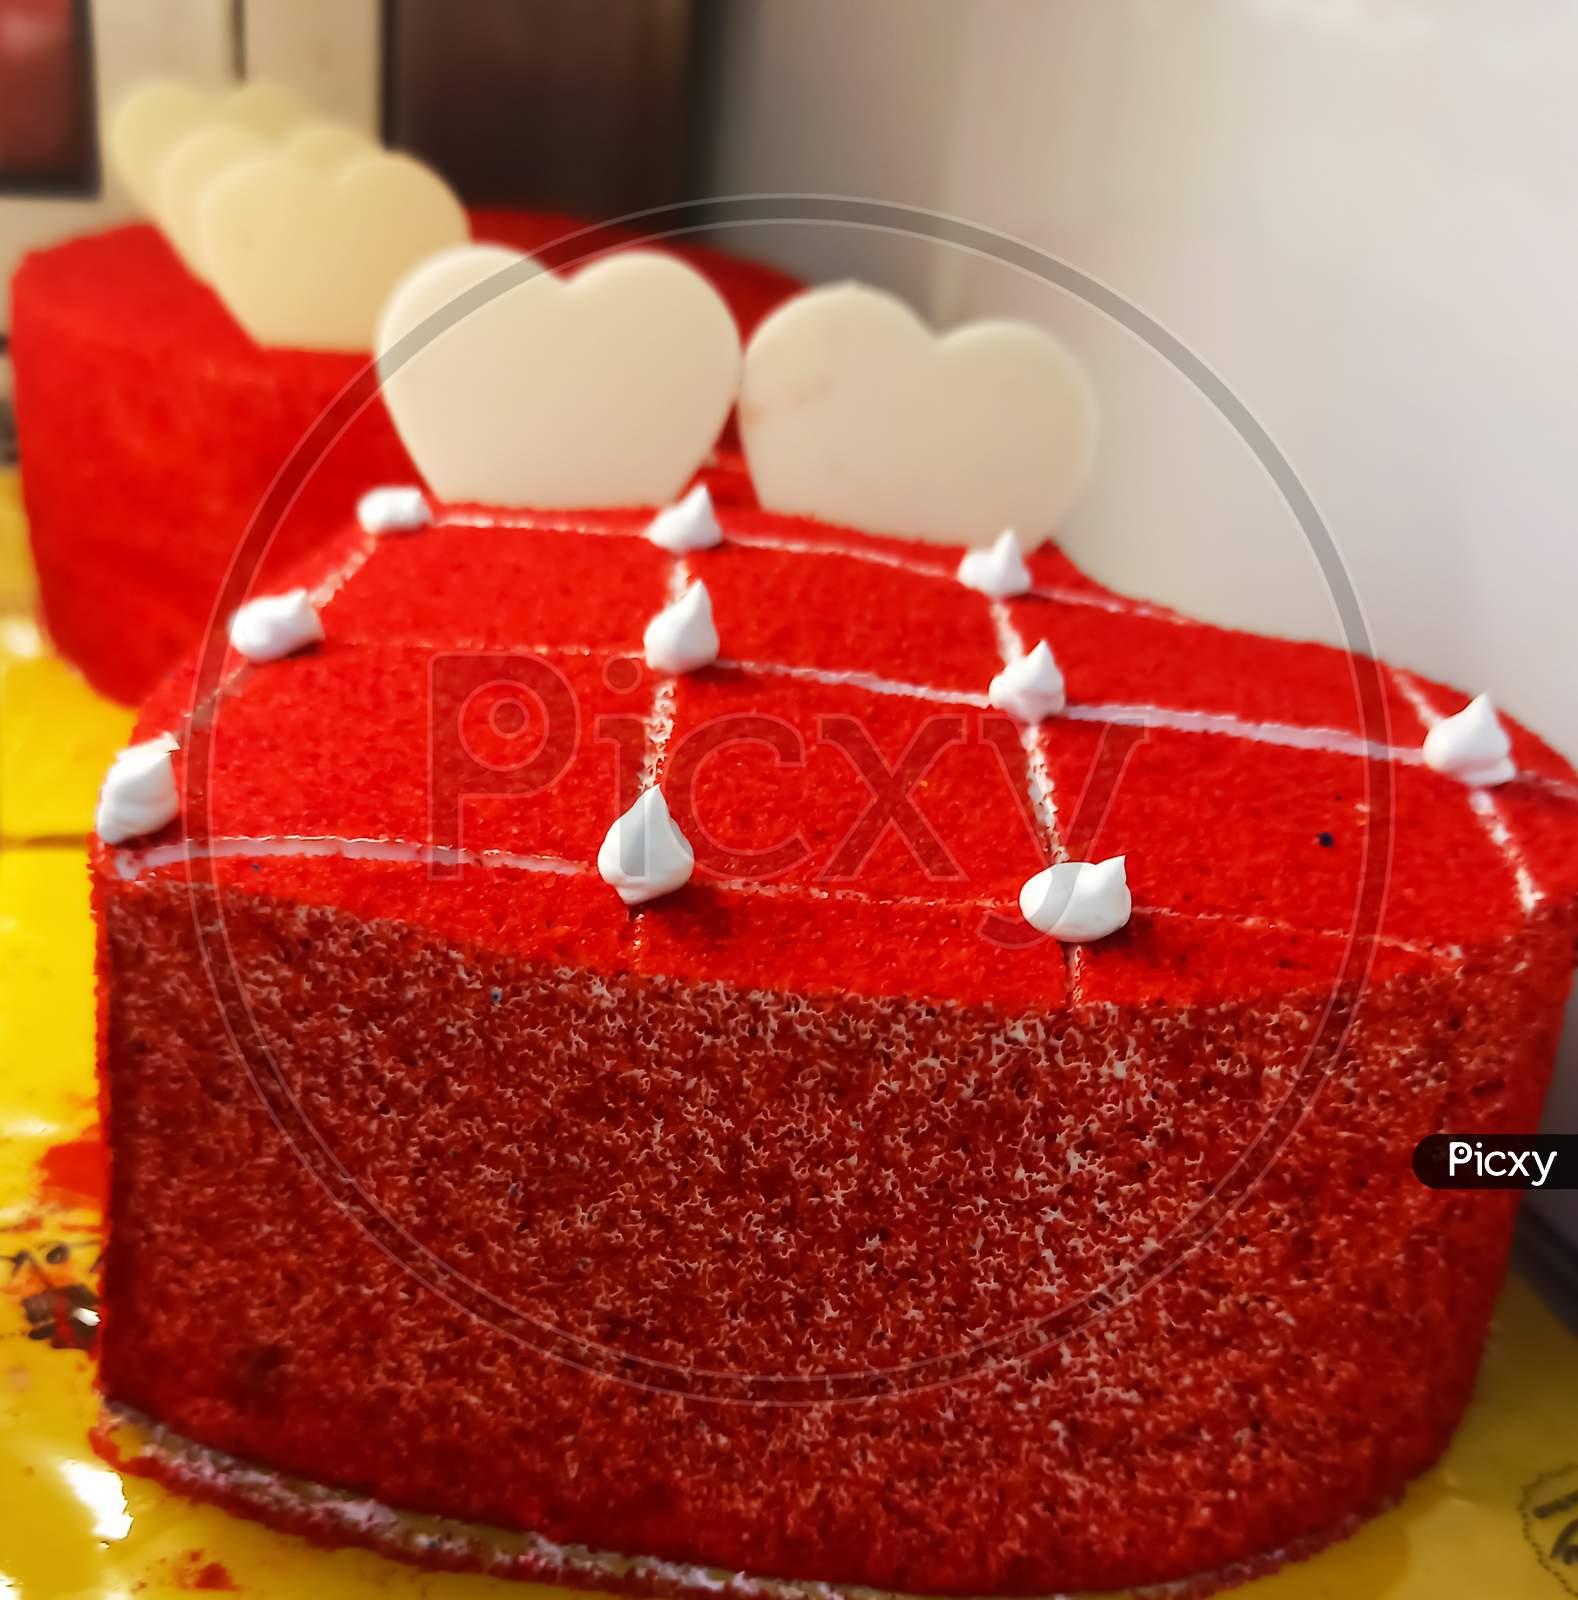 Red velvet cake with heart shape